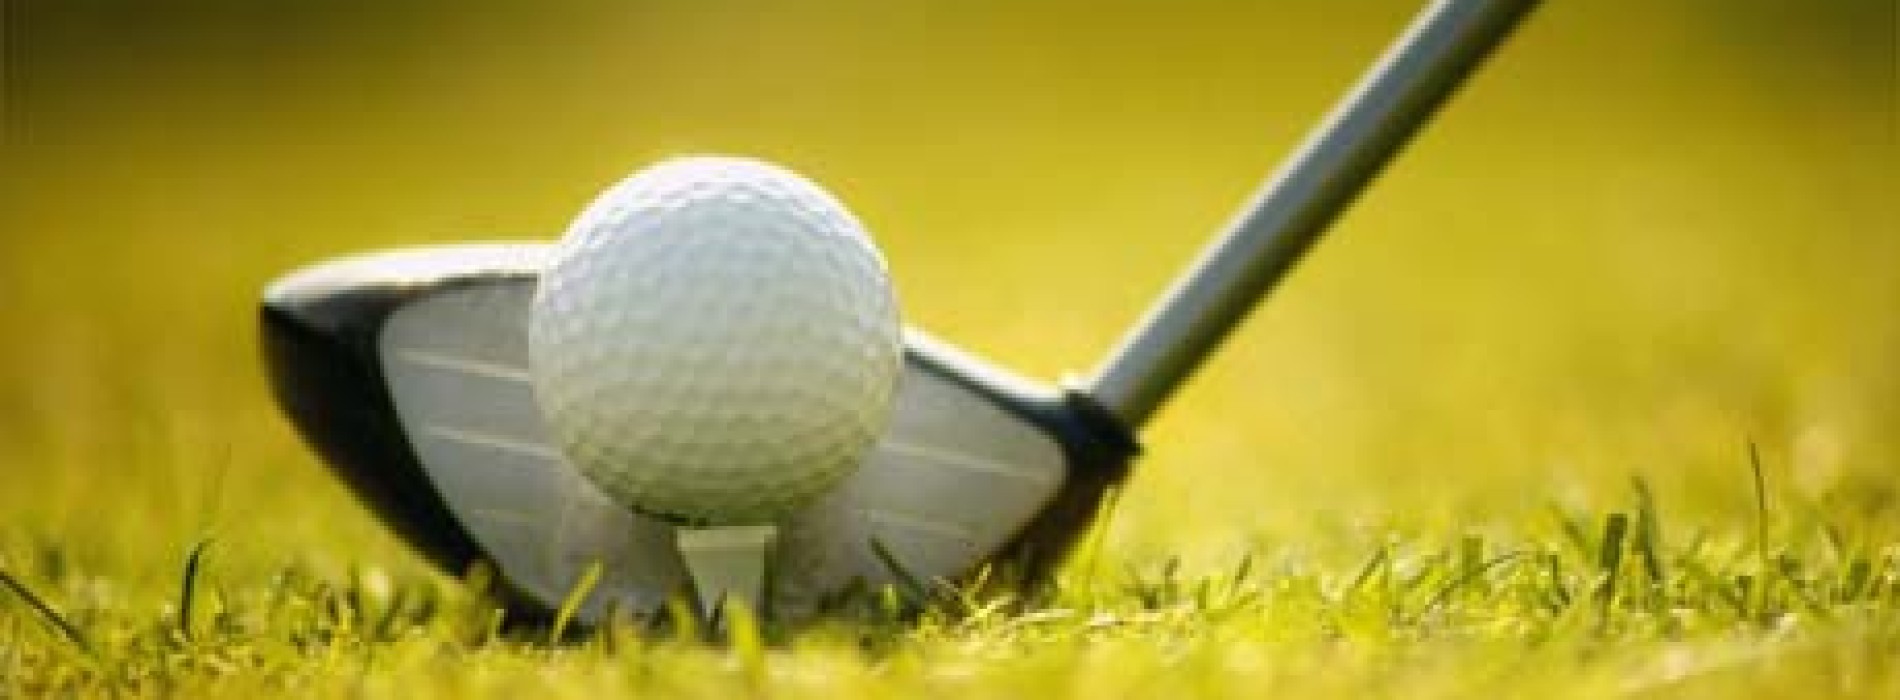 Citi Handlowy ponownie wspiera polski golf